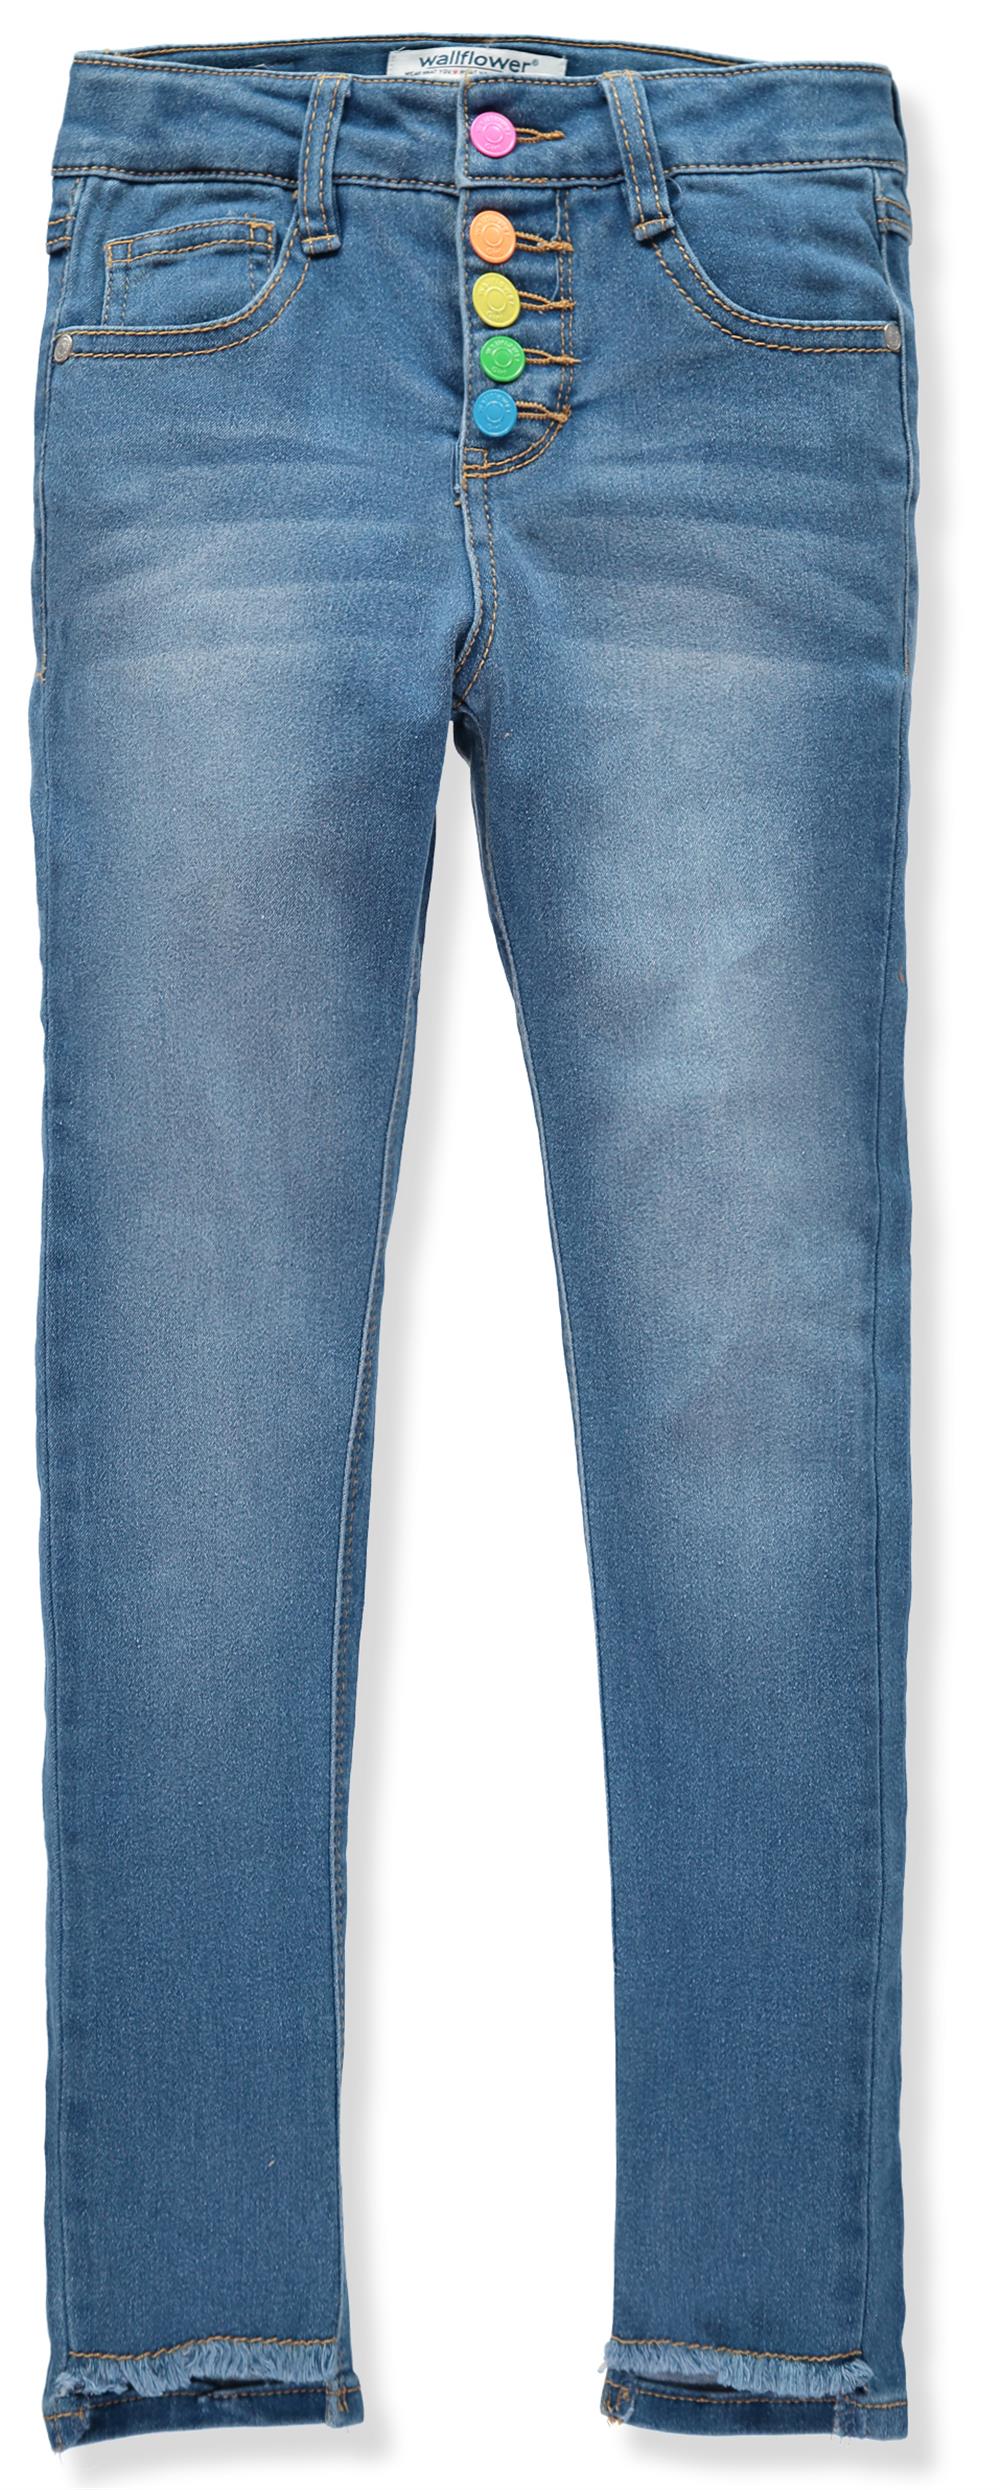 WallFlower Girls 7-16 Neon Snap Fly Jeans